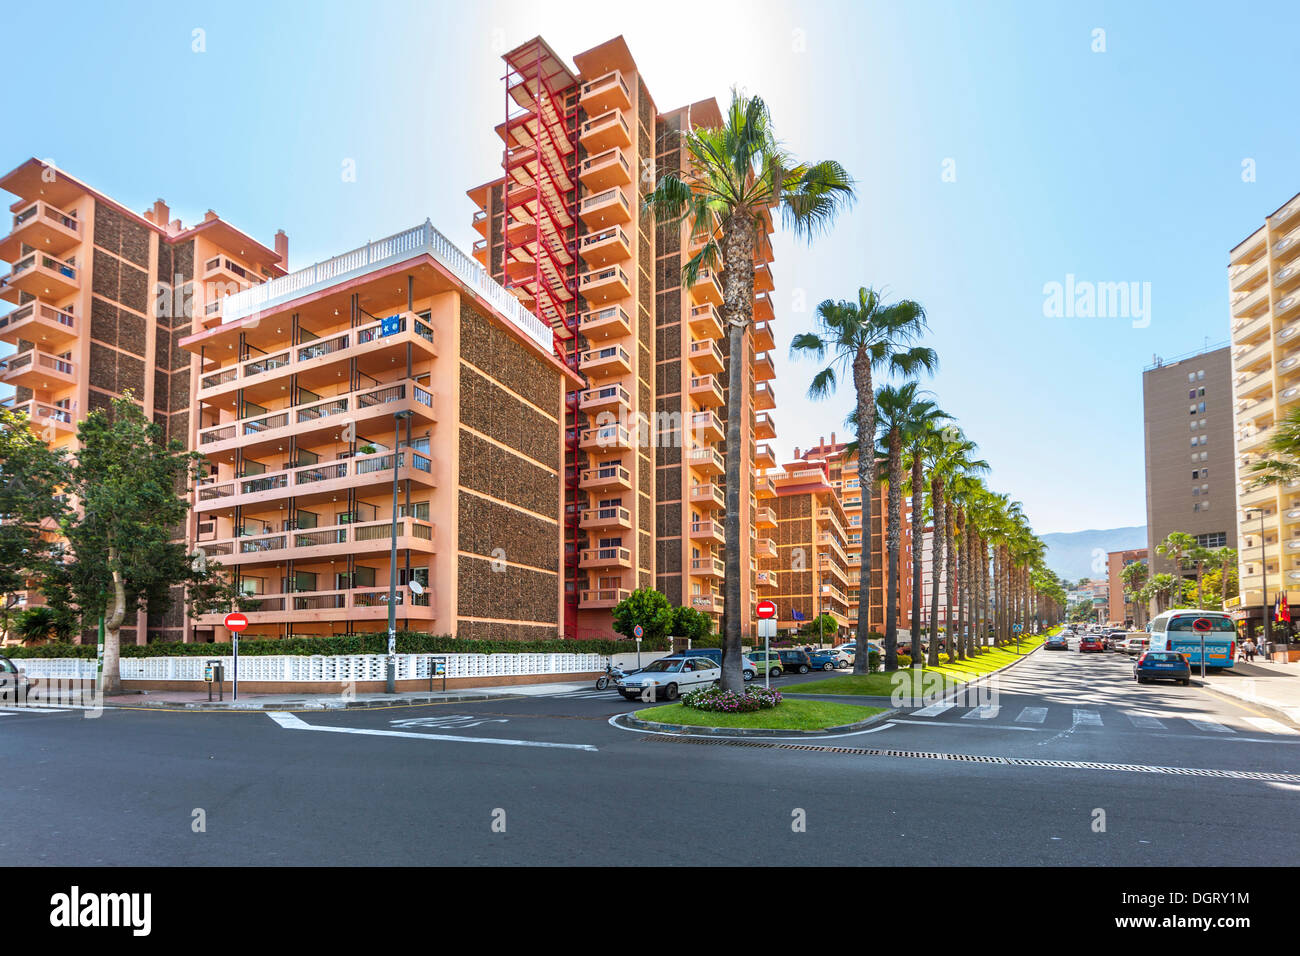 Appartements touristiques à Playa Jardin, Puerto de la Cruz, Tenerife, Canaries, Espagne Banque D'Images